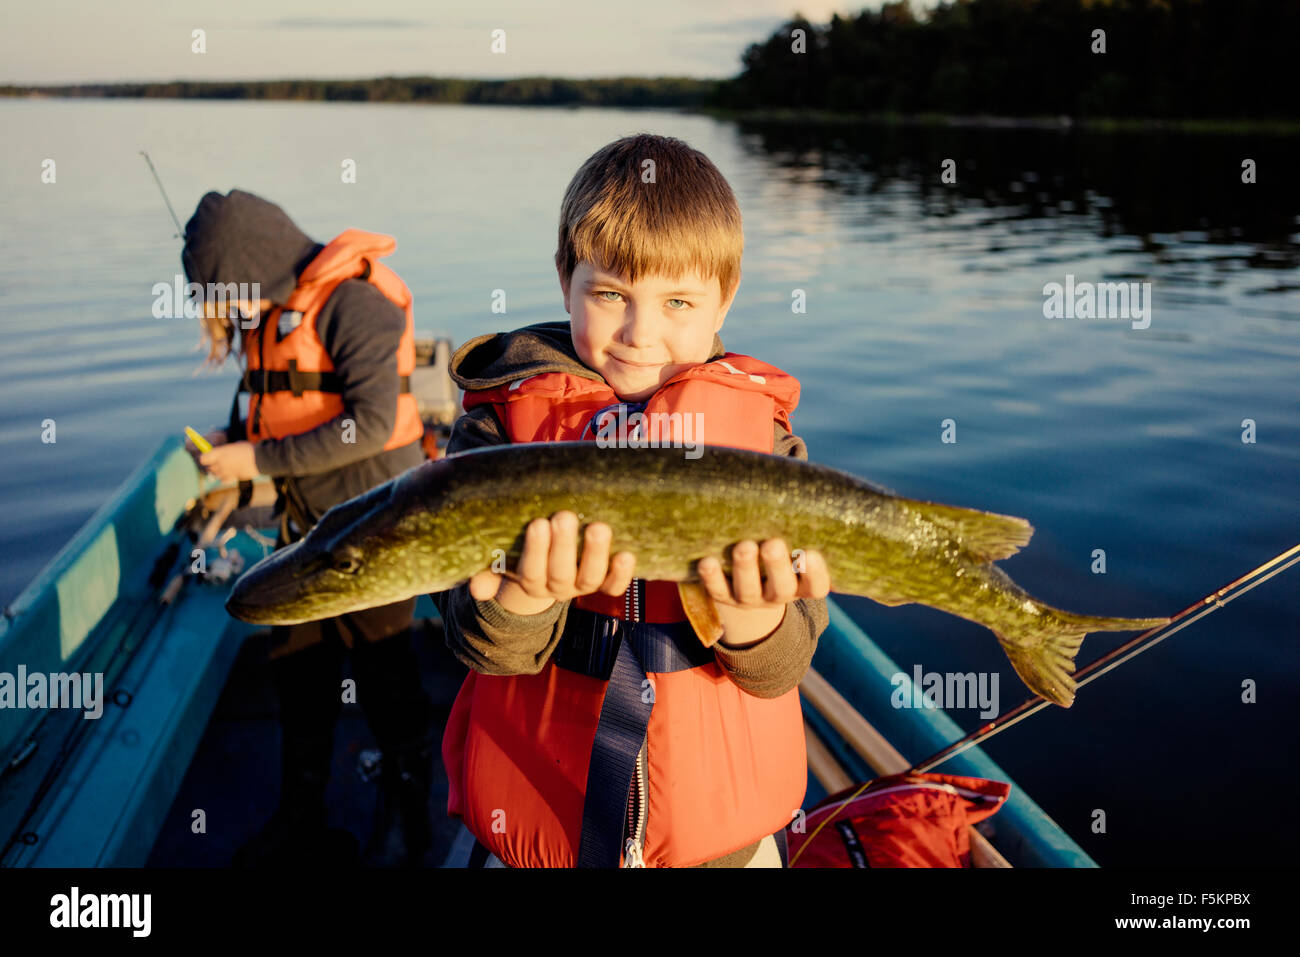 Suecia, Smaland, archipiélago Tjust Vastervik, Hasselo, Boy (10-11) en el barco mostrando pescado capturado con chica en segundo plano (8-9) Foto de stock